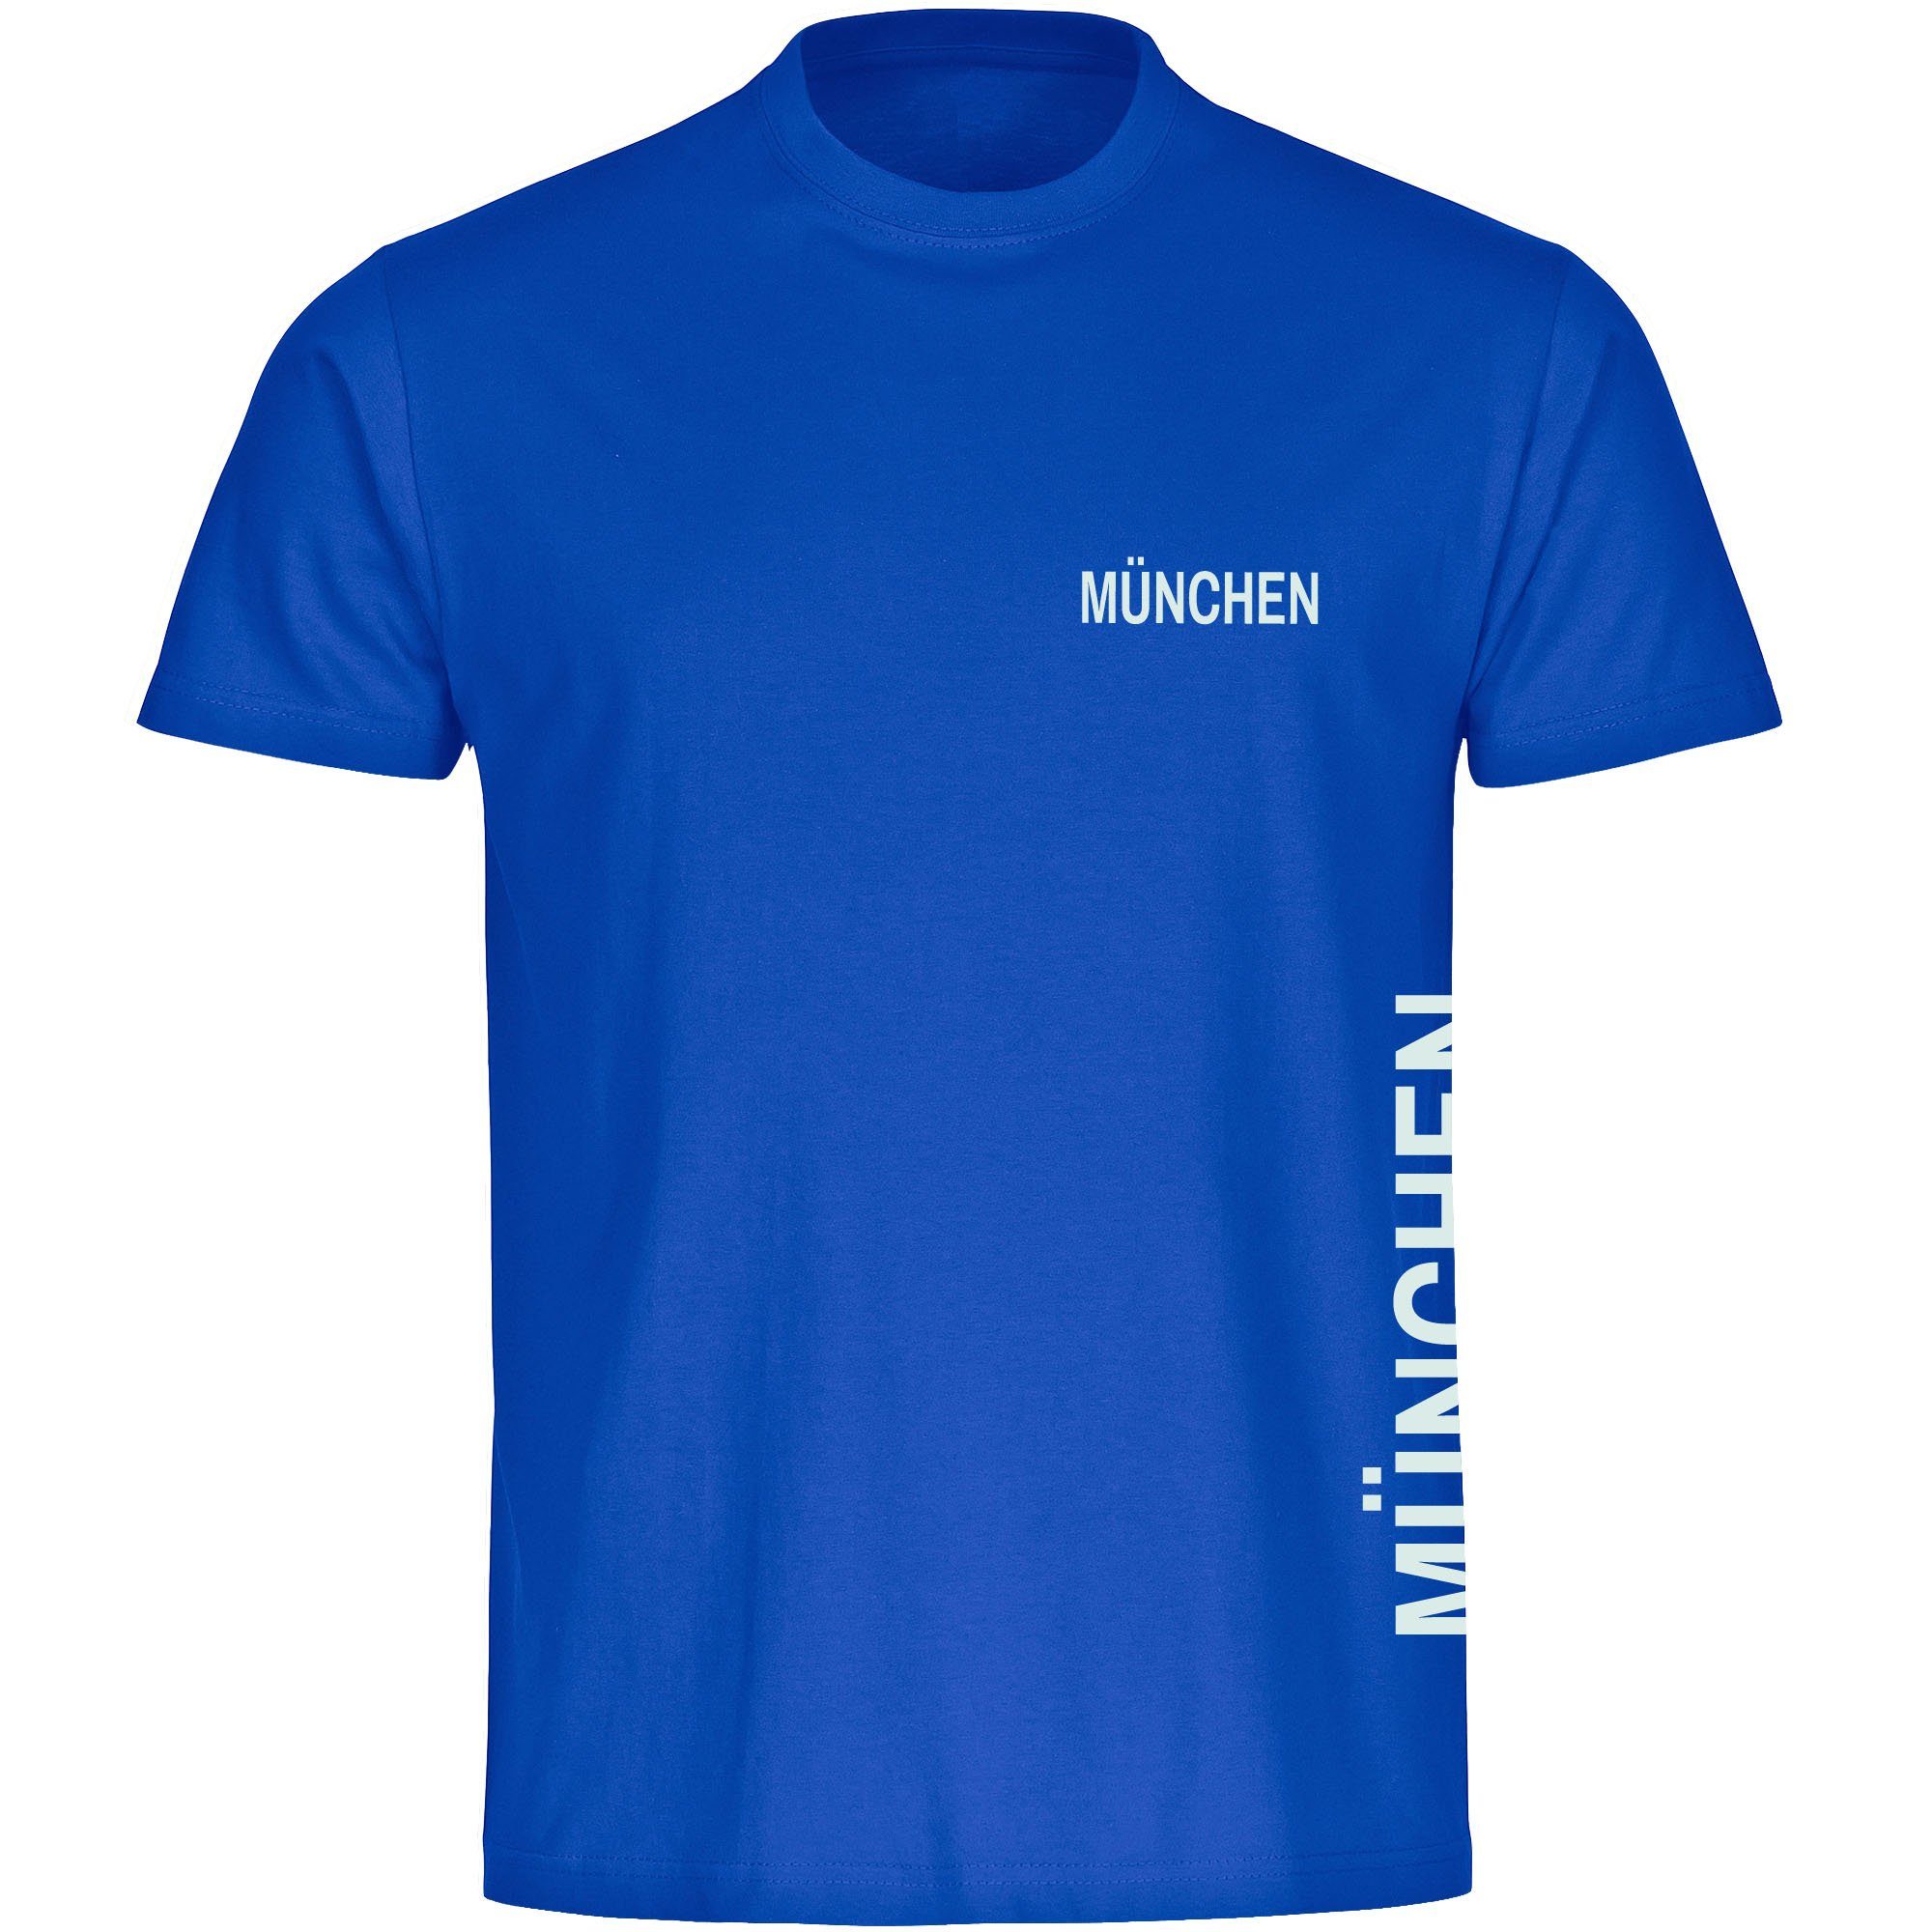 multifanshop T-Shirt Herren München blau - Brust & Seite - Männer